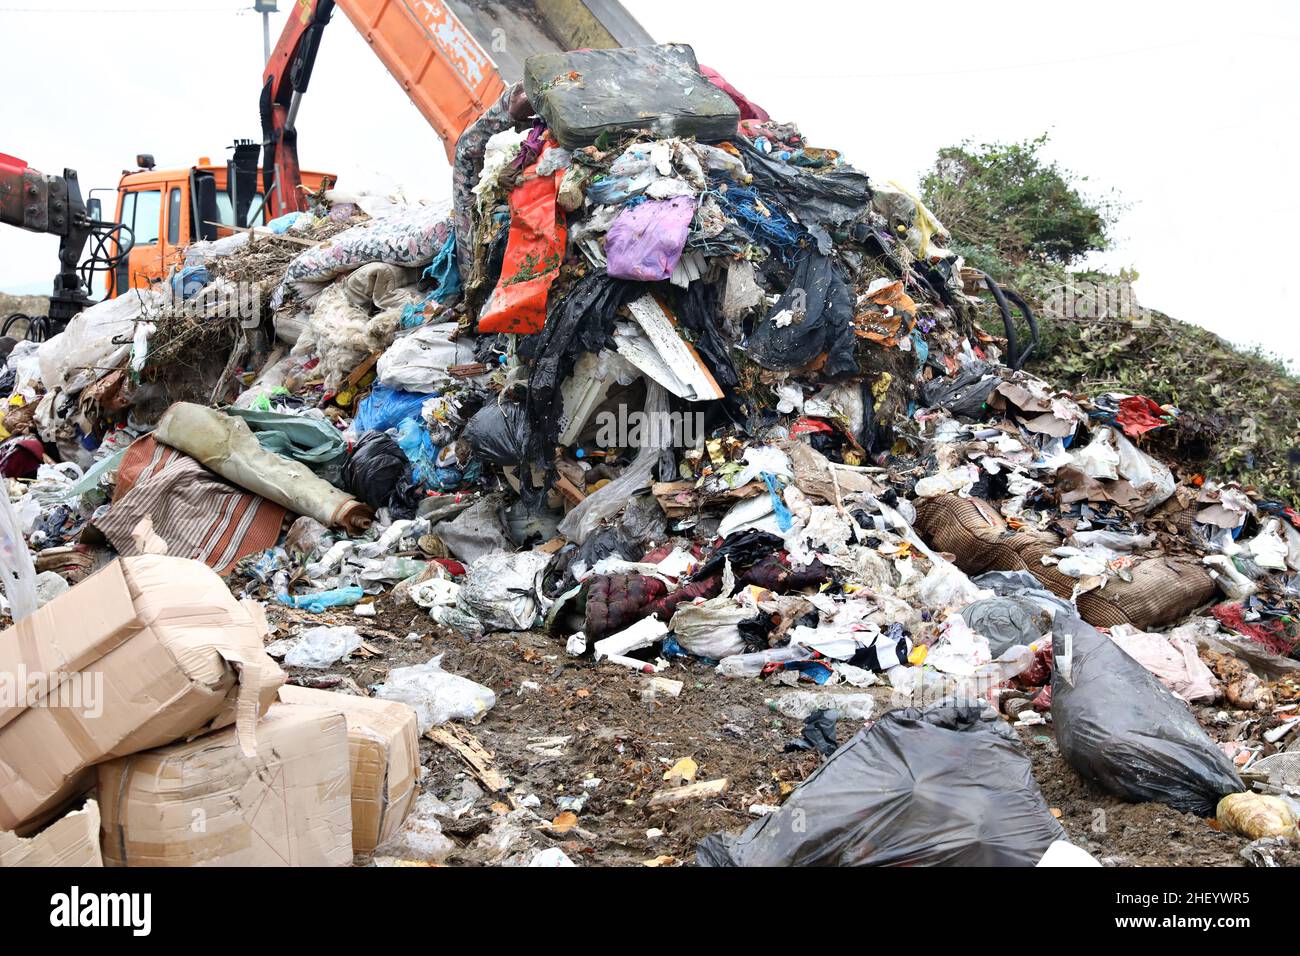 déchets déchets environnement décharge pollution déchets recyclage déchets écologie déchets enfouissement gestion des déchets sales Banque D'Images